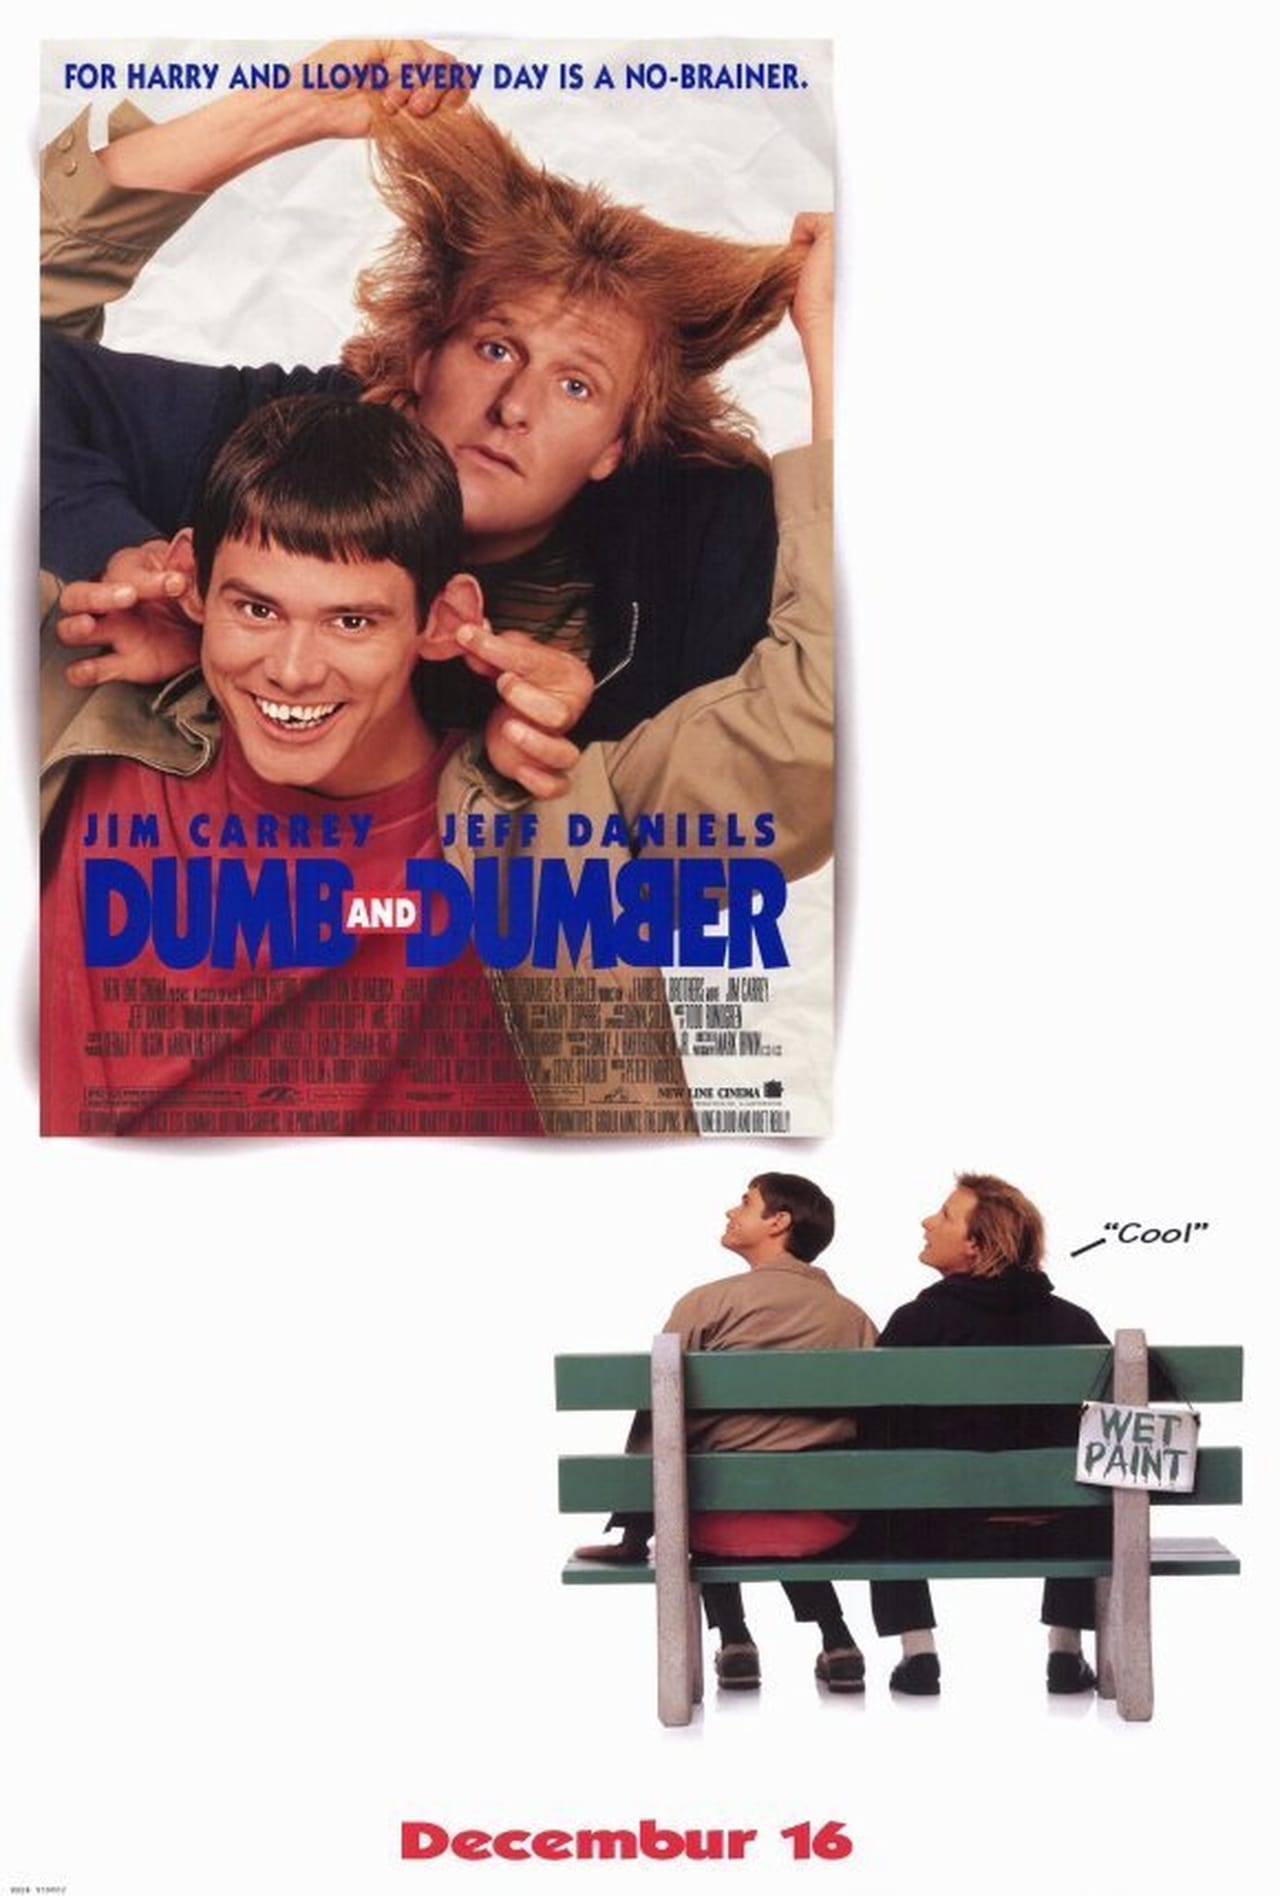 Dumb and Dumber (1994) 192Kbps 23.976Fps 48Khz 2.0Ch DigitalTV Turkish Audio TAC